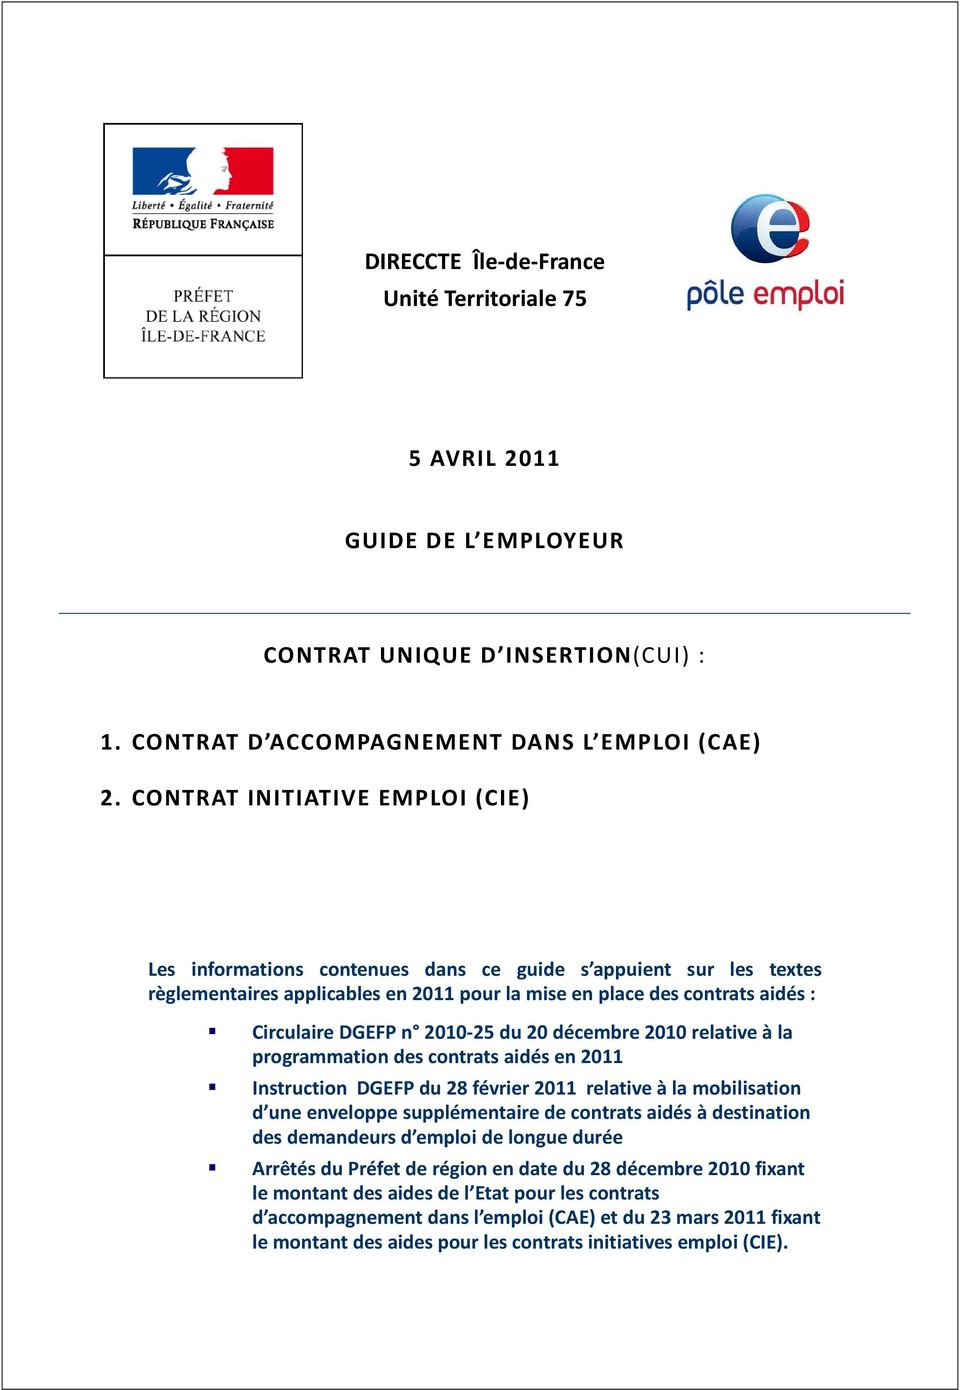 2010-25 du 20 décembre 2010 relative à la programmation des contrats aidés en 2011 Instruction DGEFP du 28 février 2011 relative à la mobilisation d une enveloppe supplémentaire de contrats aidés à